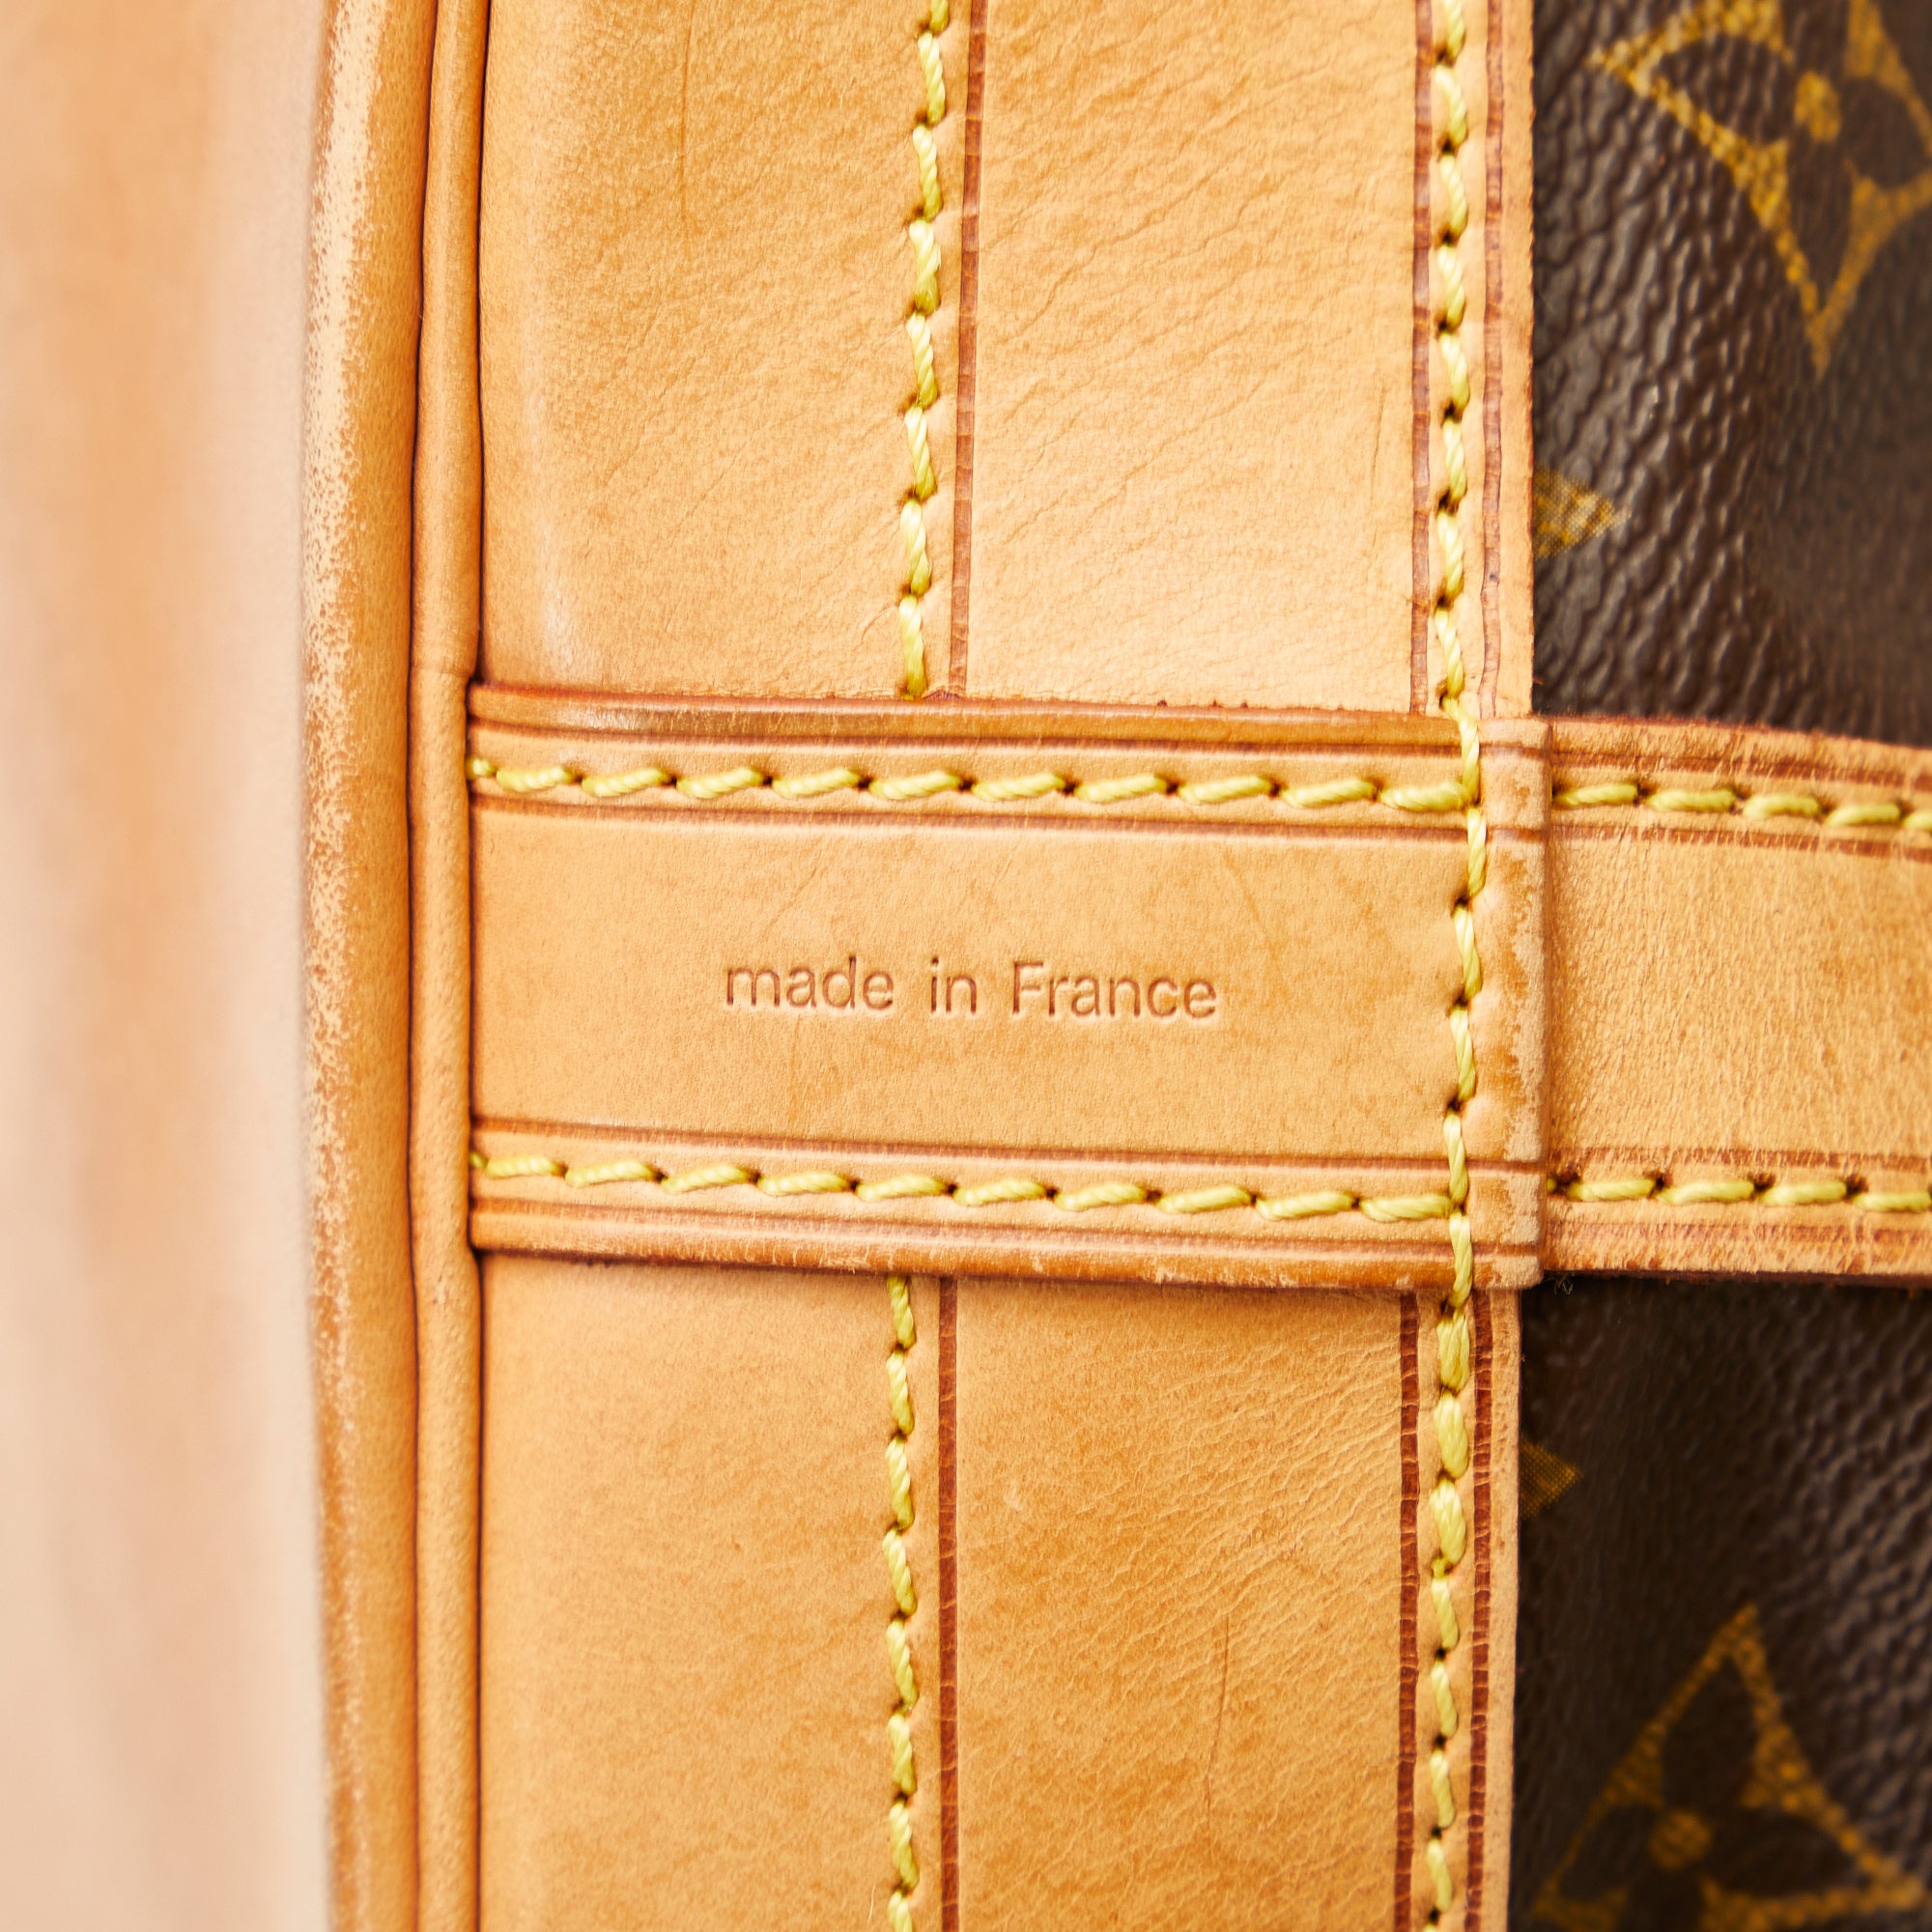 Louis Vuitton Noe GM Bucket Bag Nomad Vachetta Leather